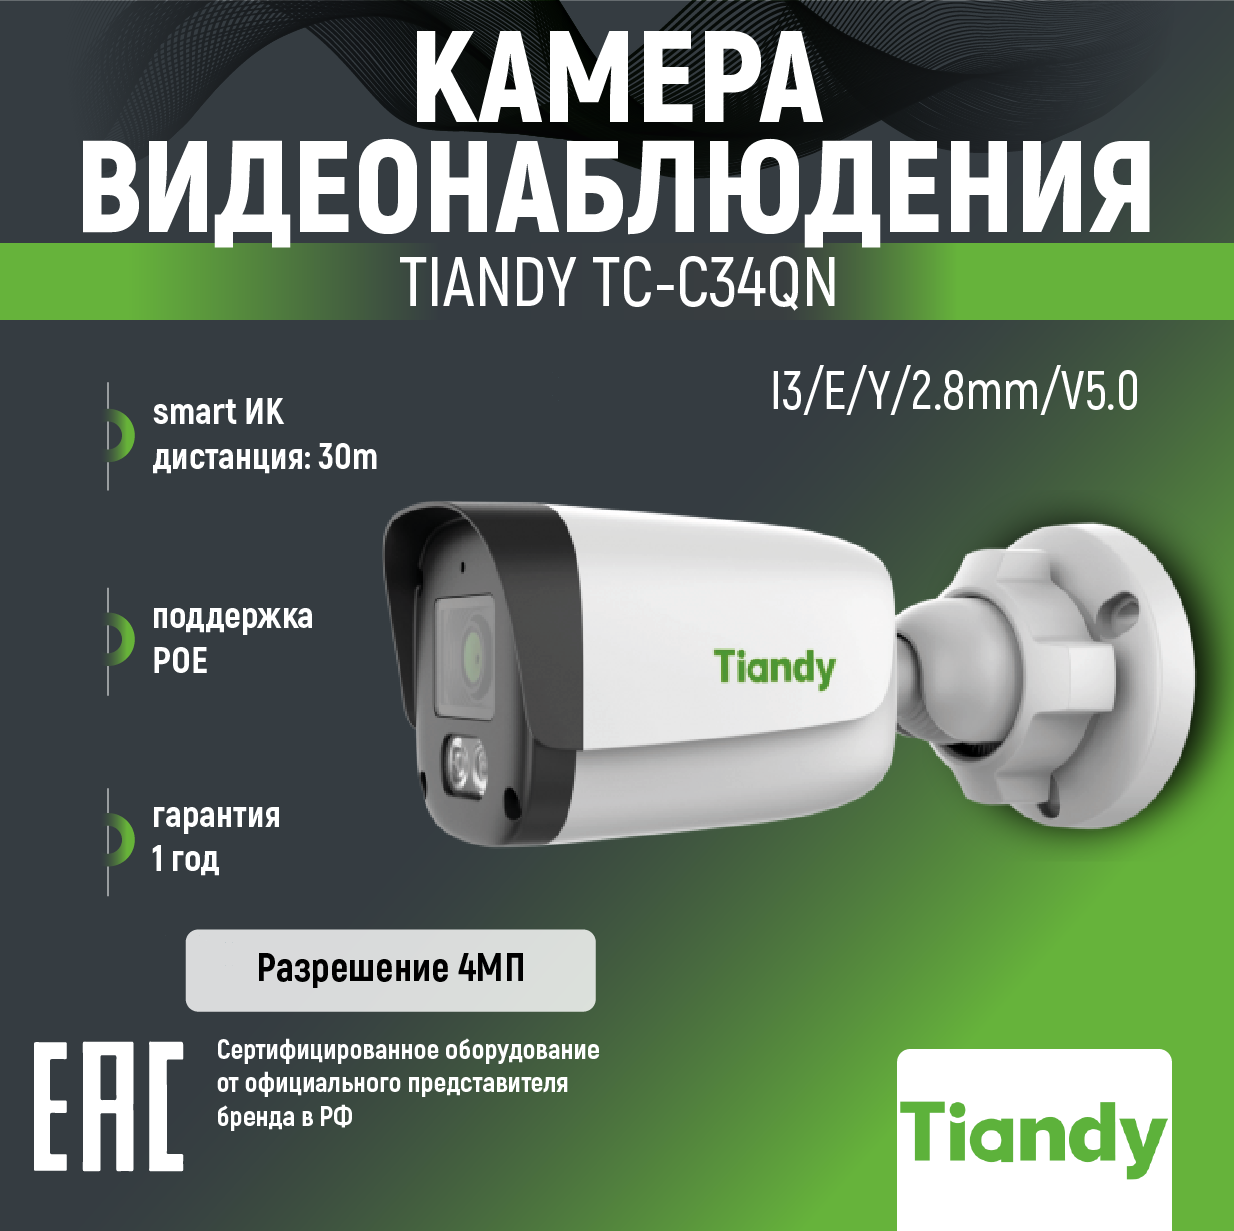 IP-камера 4 МП TIANDY серии SPARK, фиксированный объектив, Smart IR, ИК